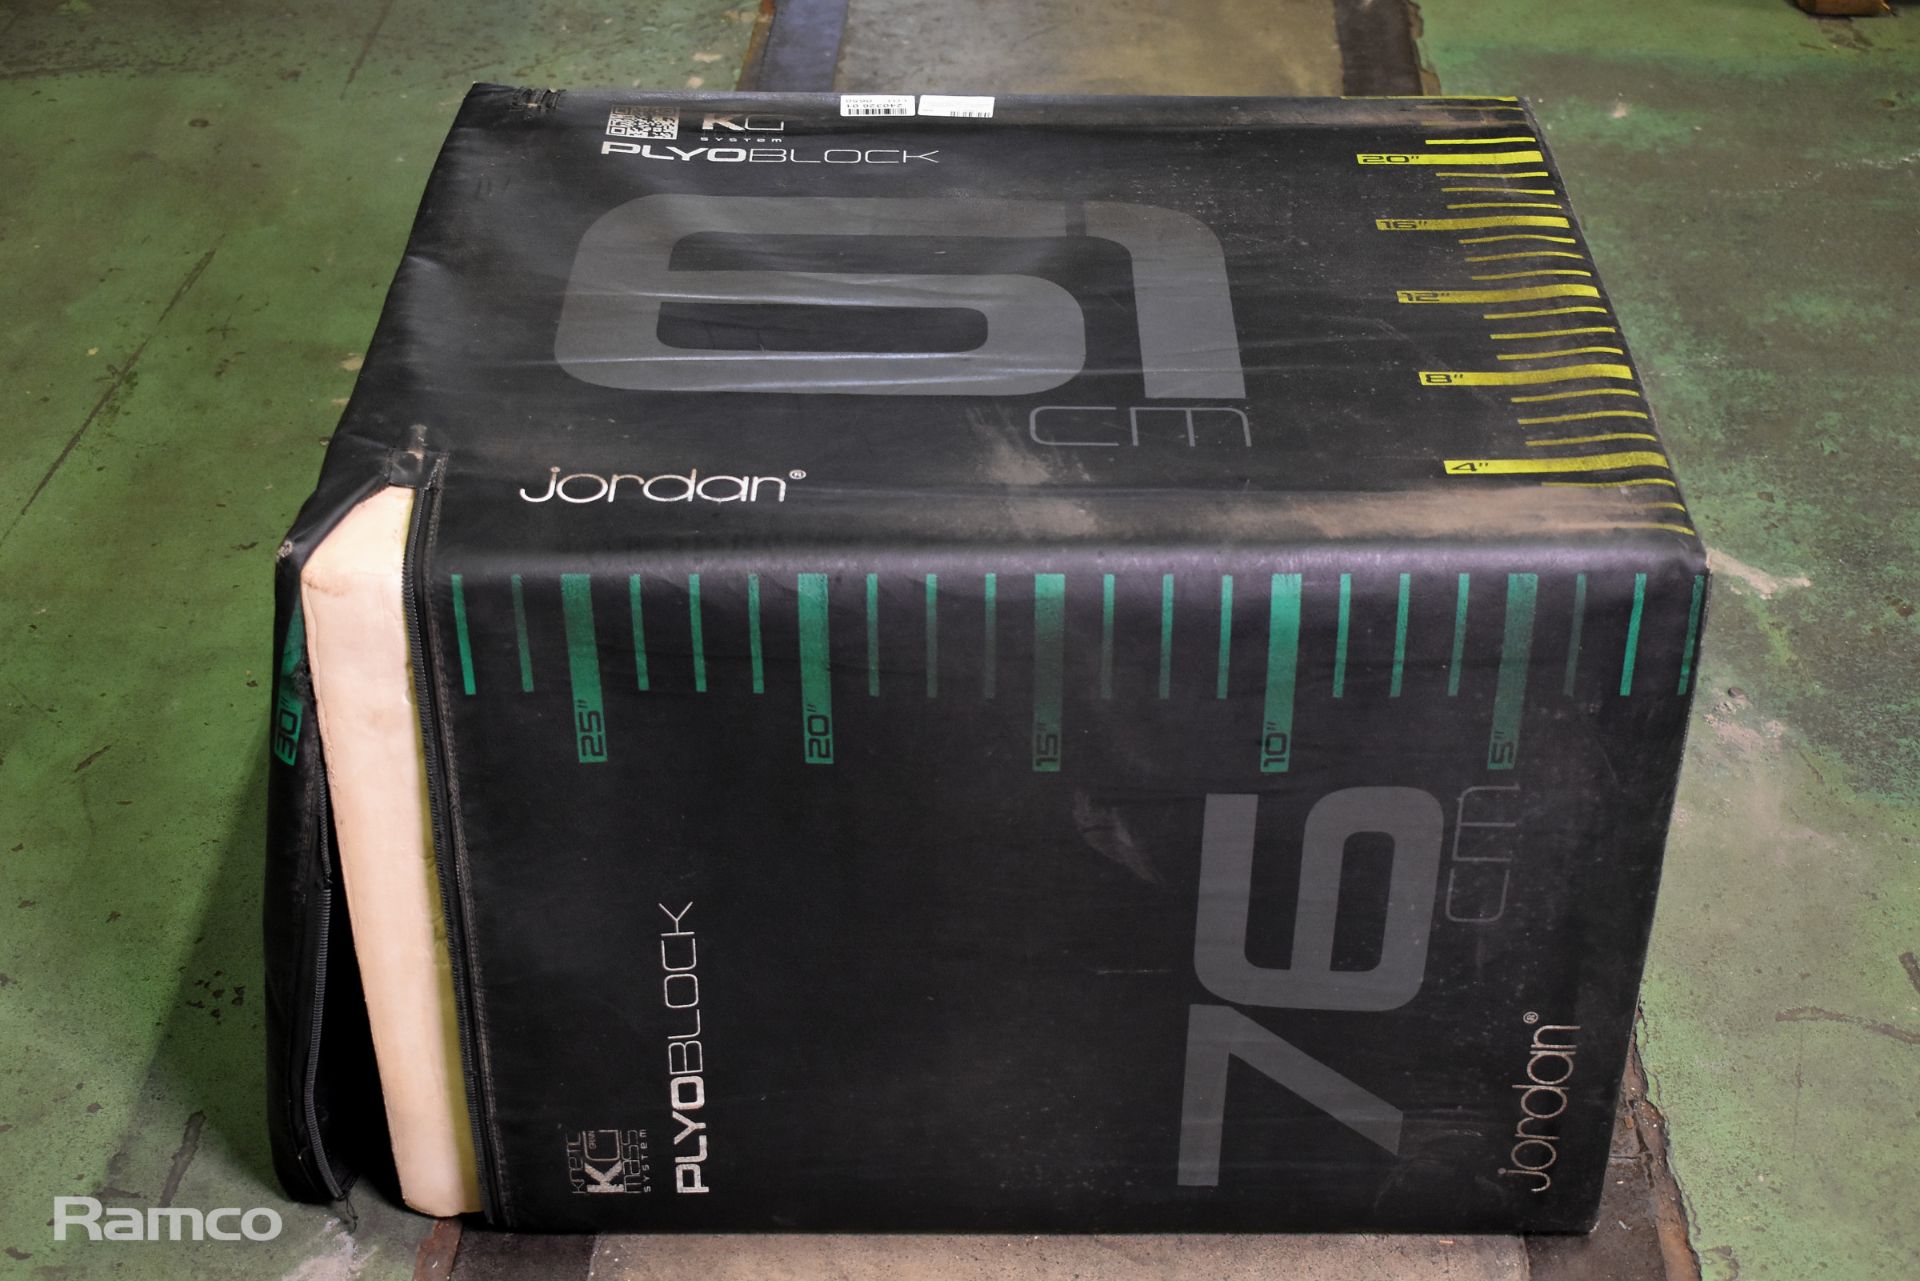 Jordan 3 in 1 Plyo block - broken zip - W 770 x D 620 x H 520mm - Image 2 of 5